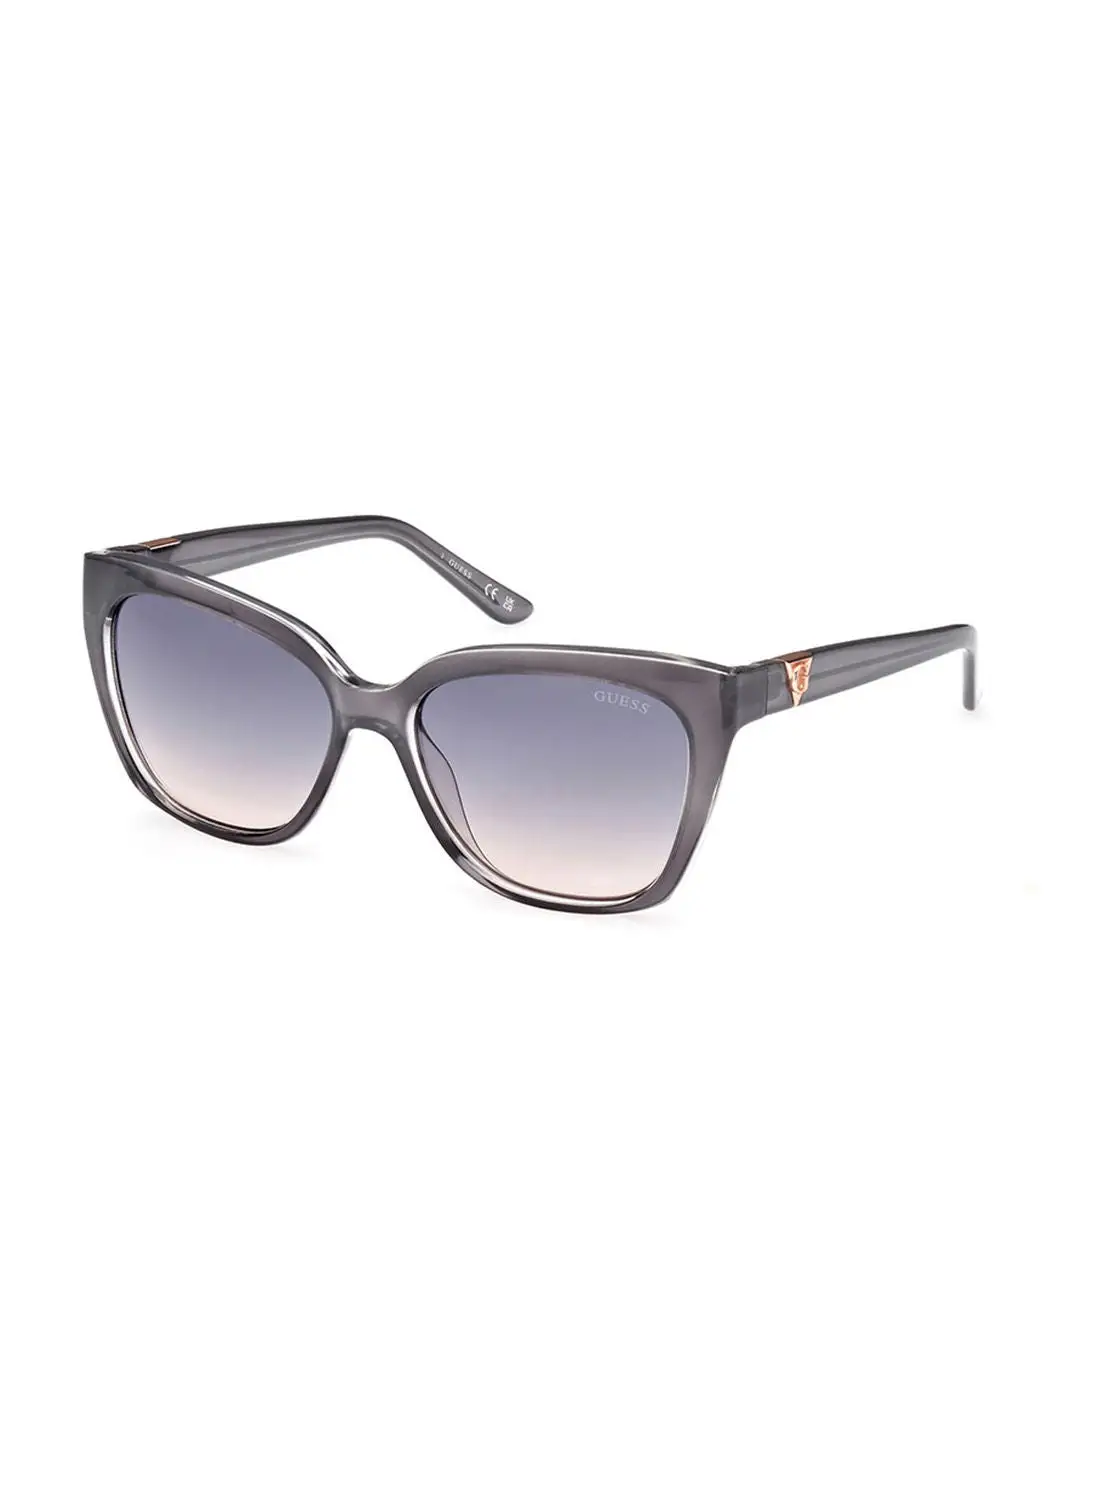 GUESS Sunglasses For Women GU787820W55